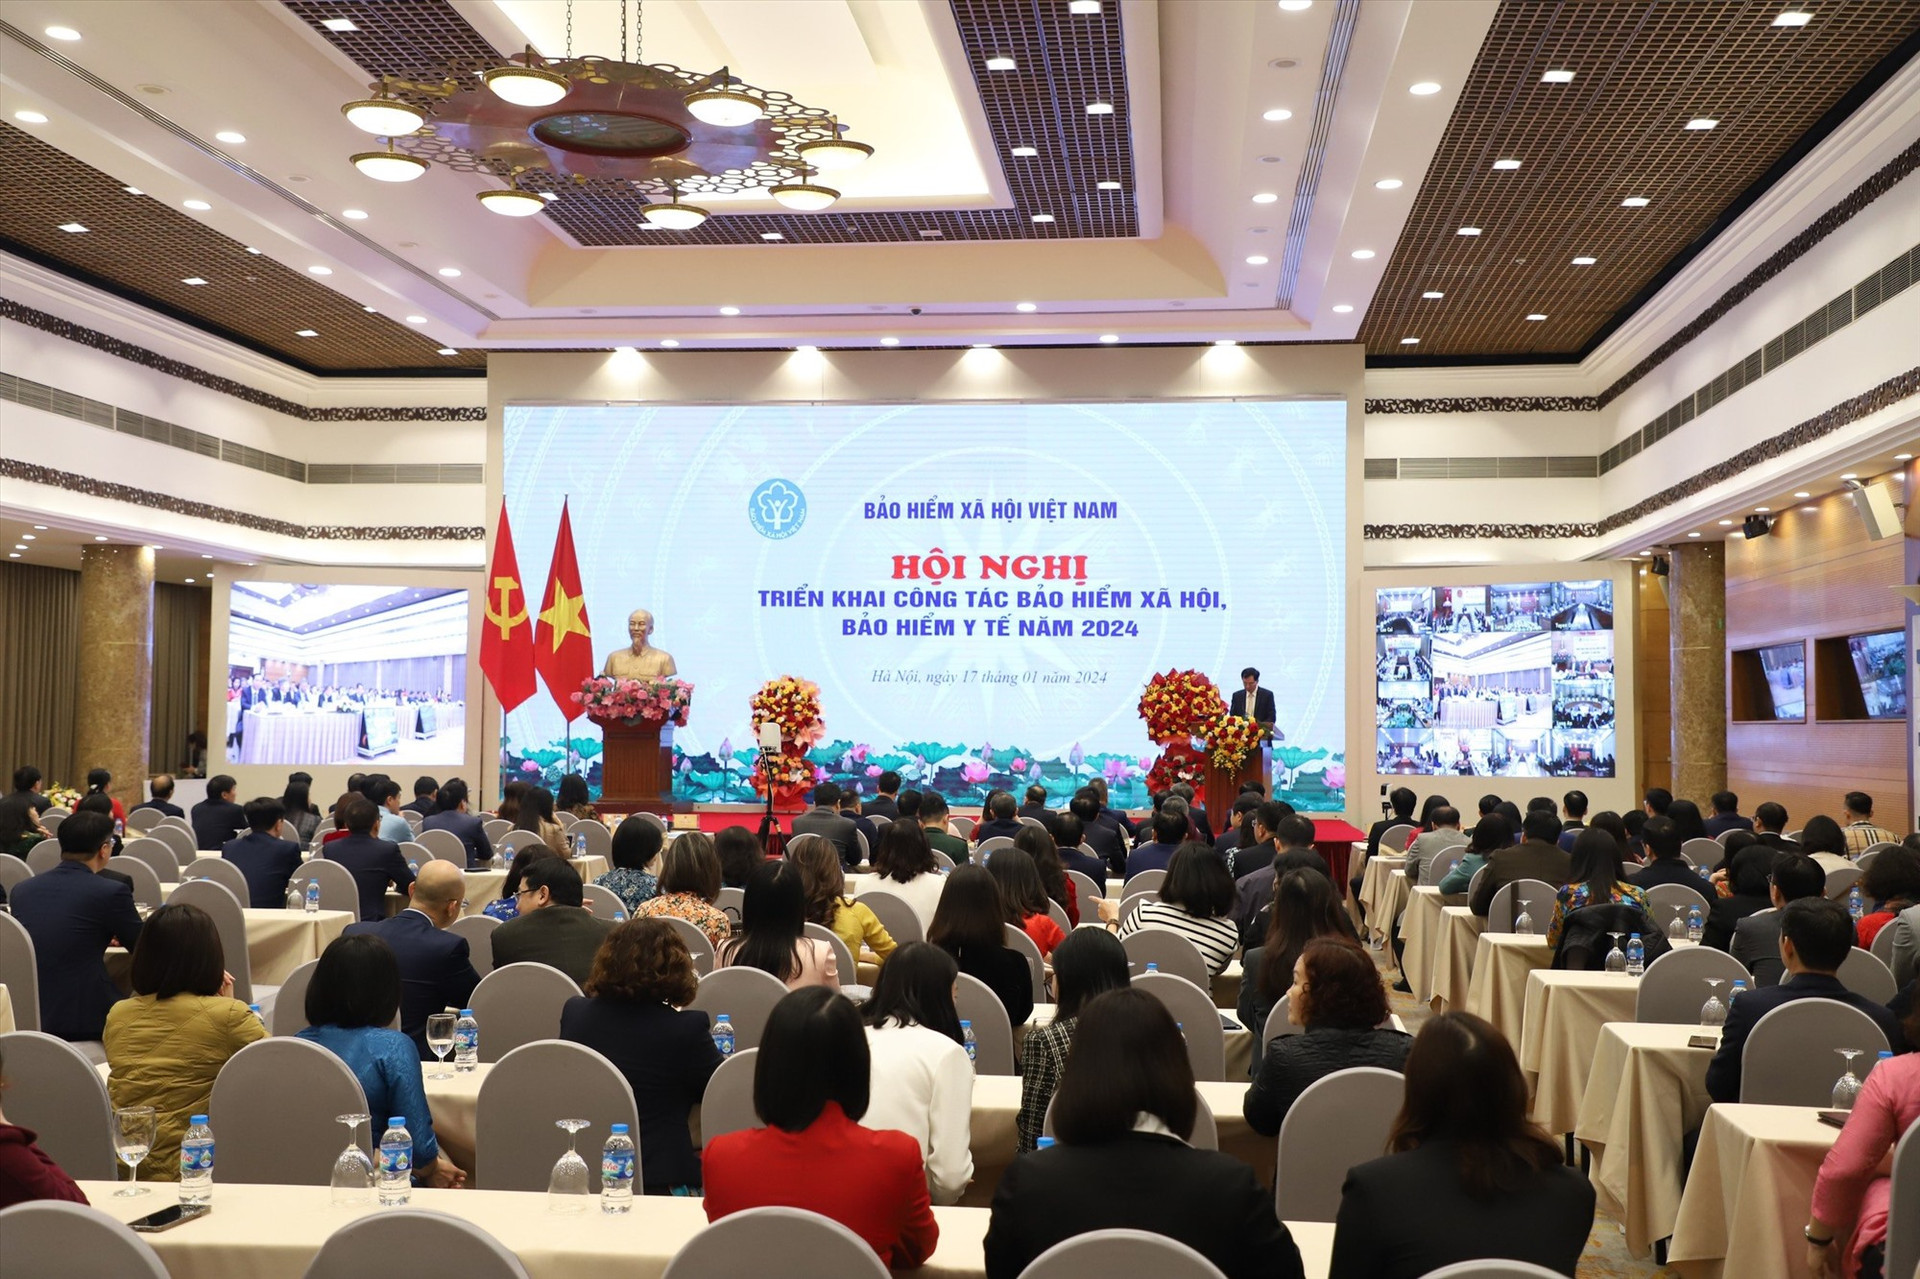 Hội nghị trực tuyến toàn quốc triển khai nhiệm vụ ngành BHXH Việt Nam. Ảnh: BHXH Việt Nam